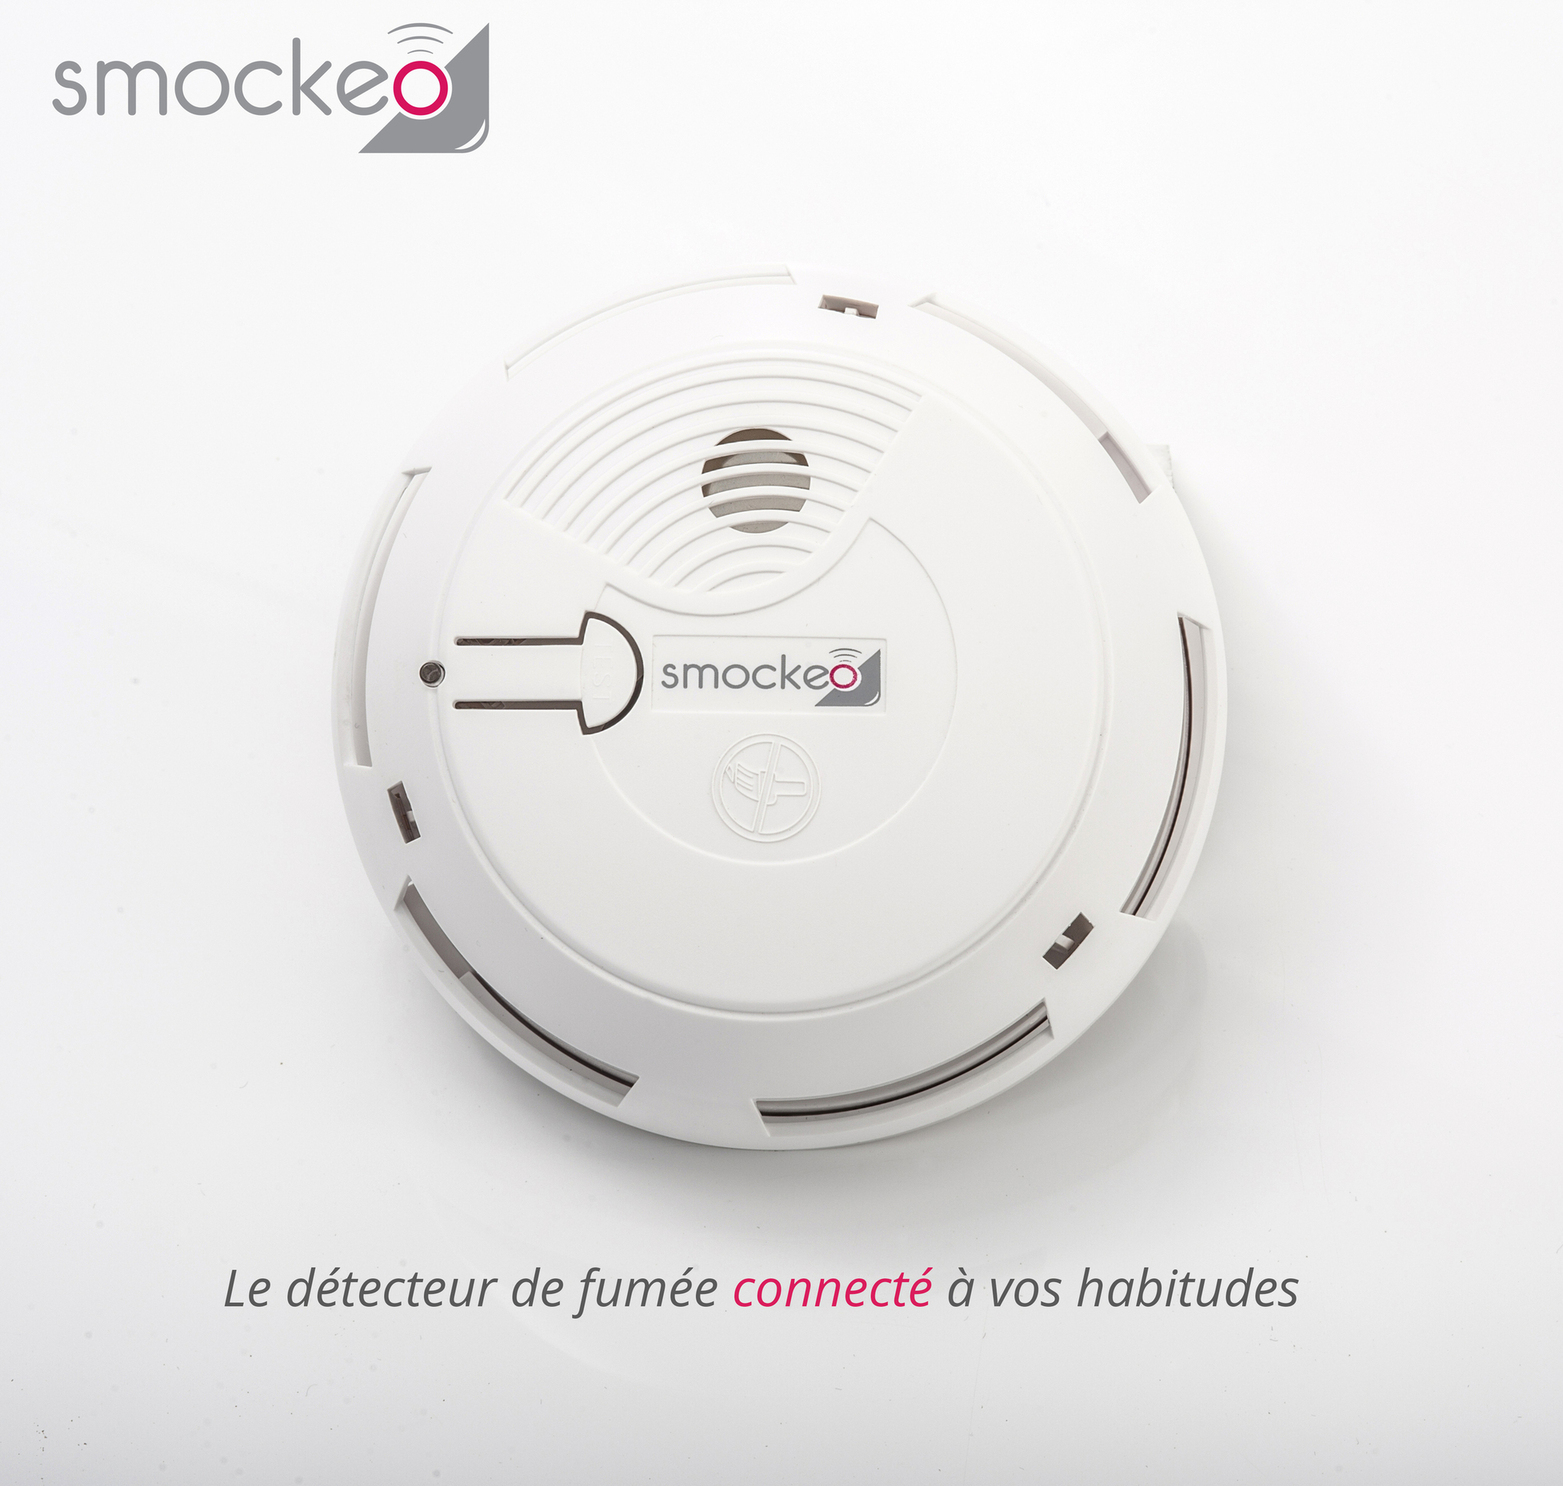 Smockeo le detecteur de fumée connecté à vos habitudes